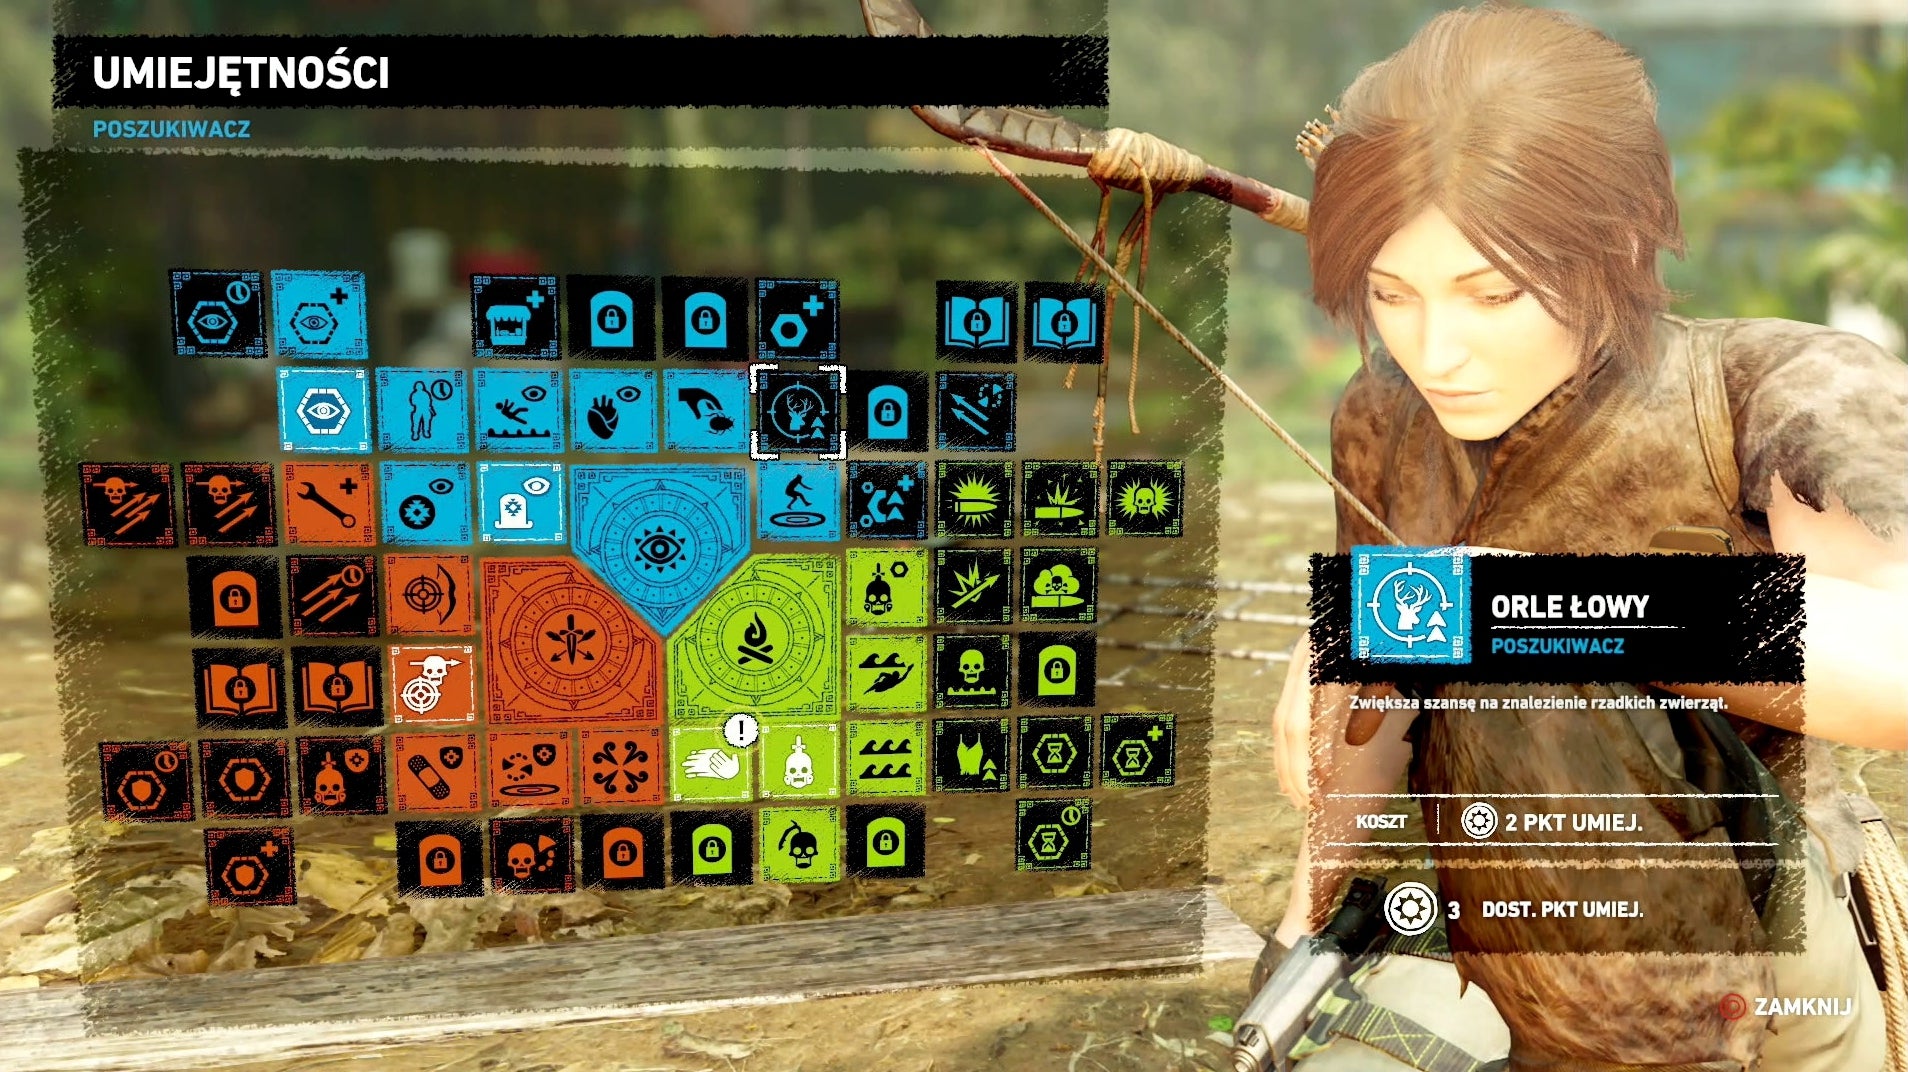 Obrazki dla Shadow of the Tomb Raider - obozy, umiejętności, tworzenie i modyfikowanie przedmiotów, crafting, szybka podróż